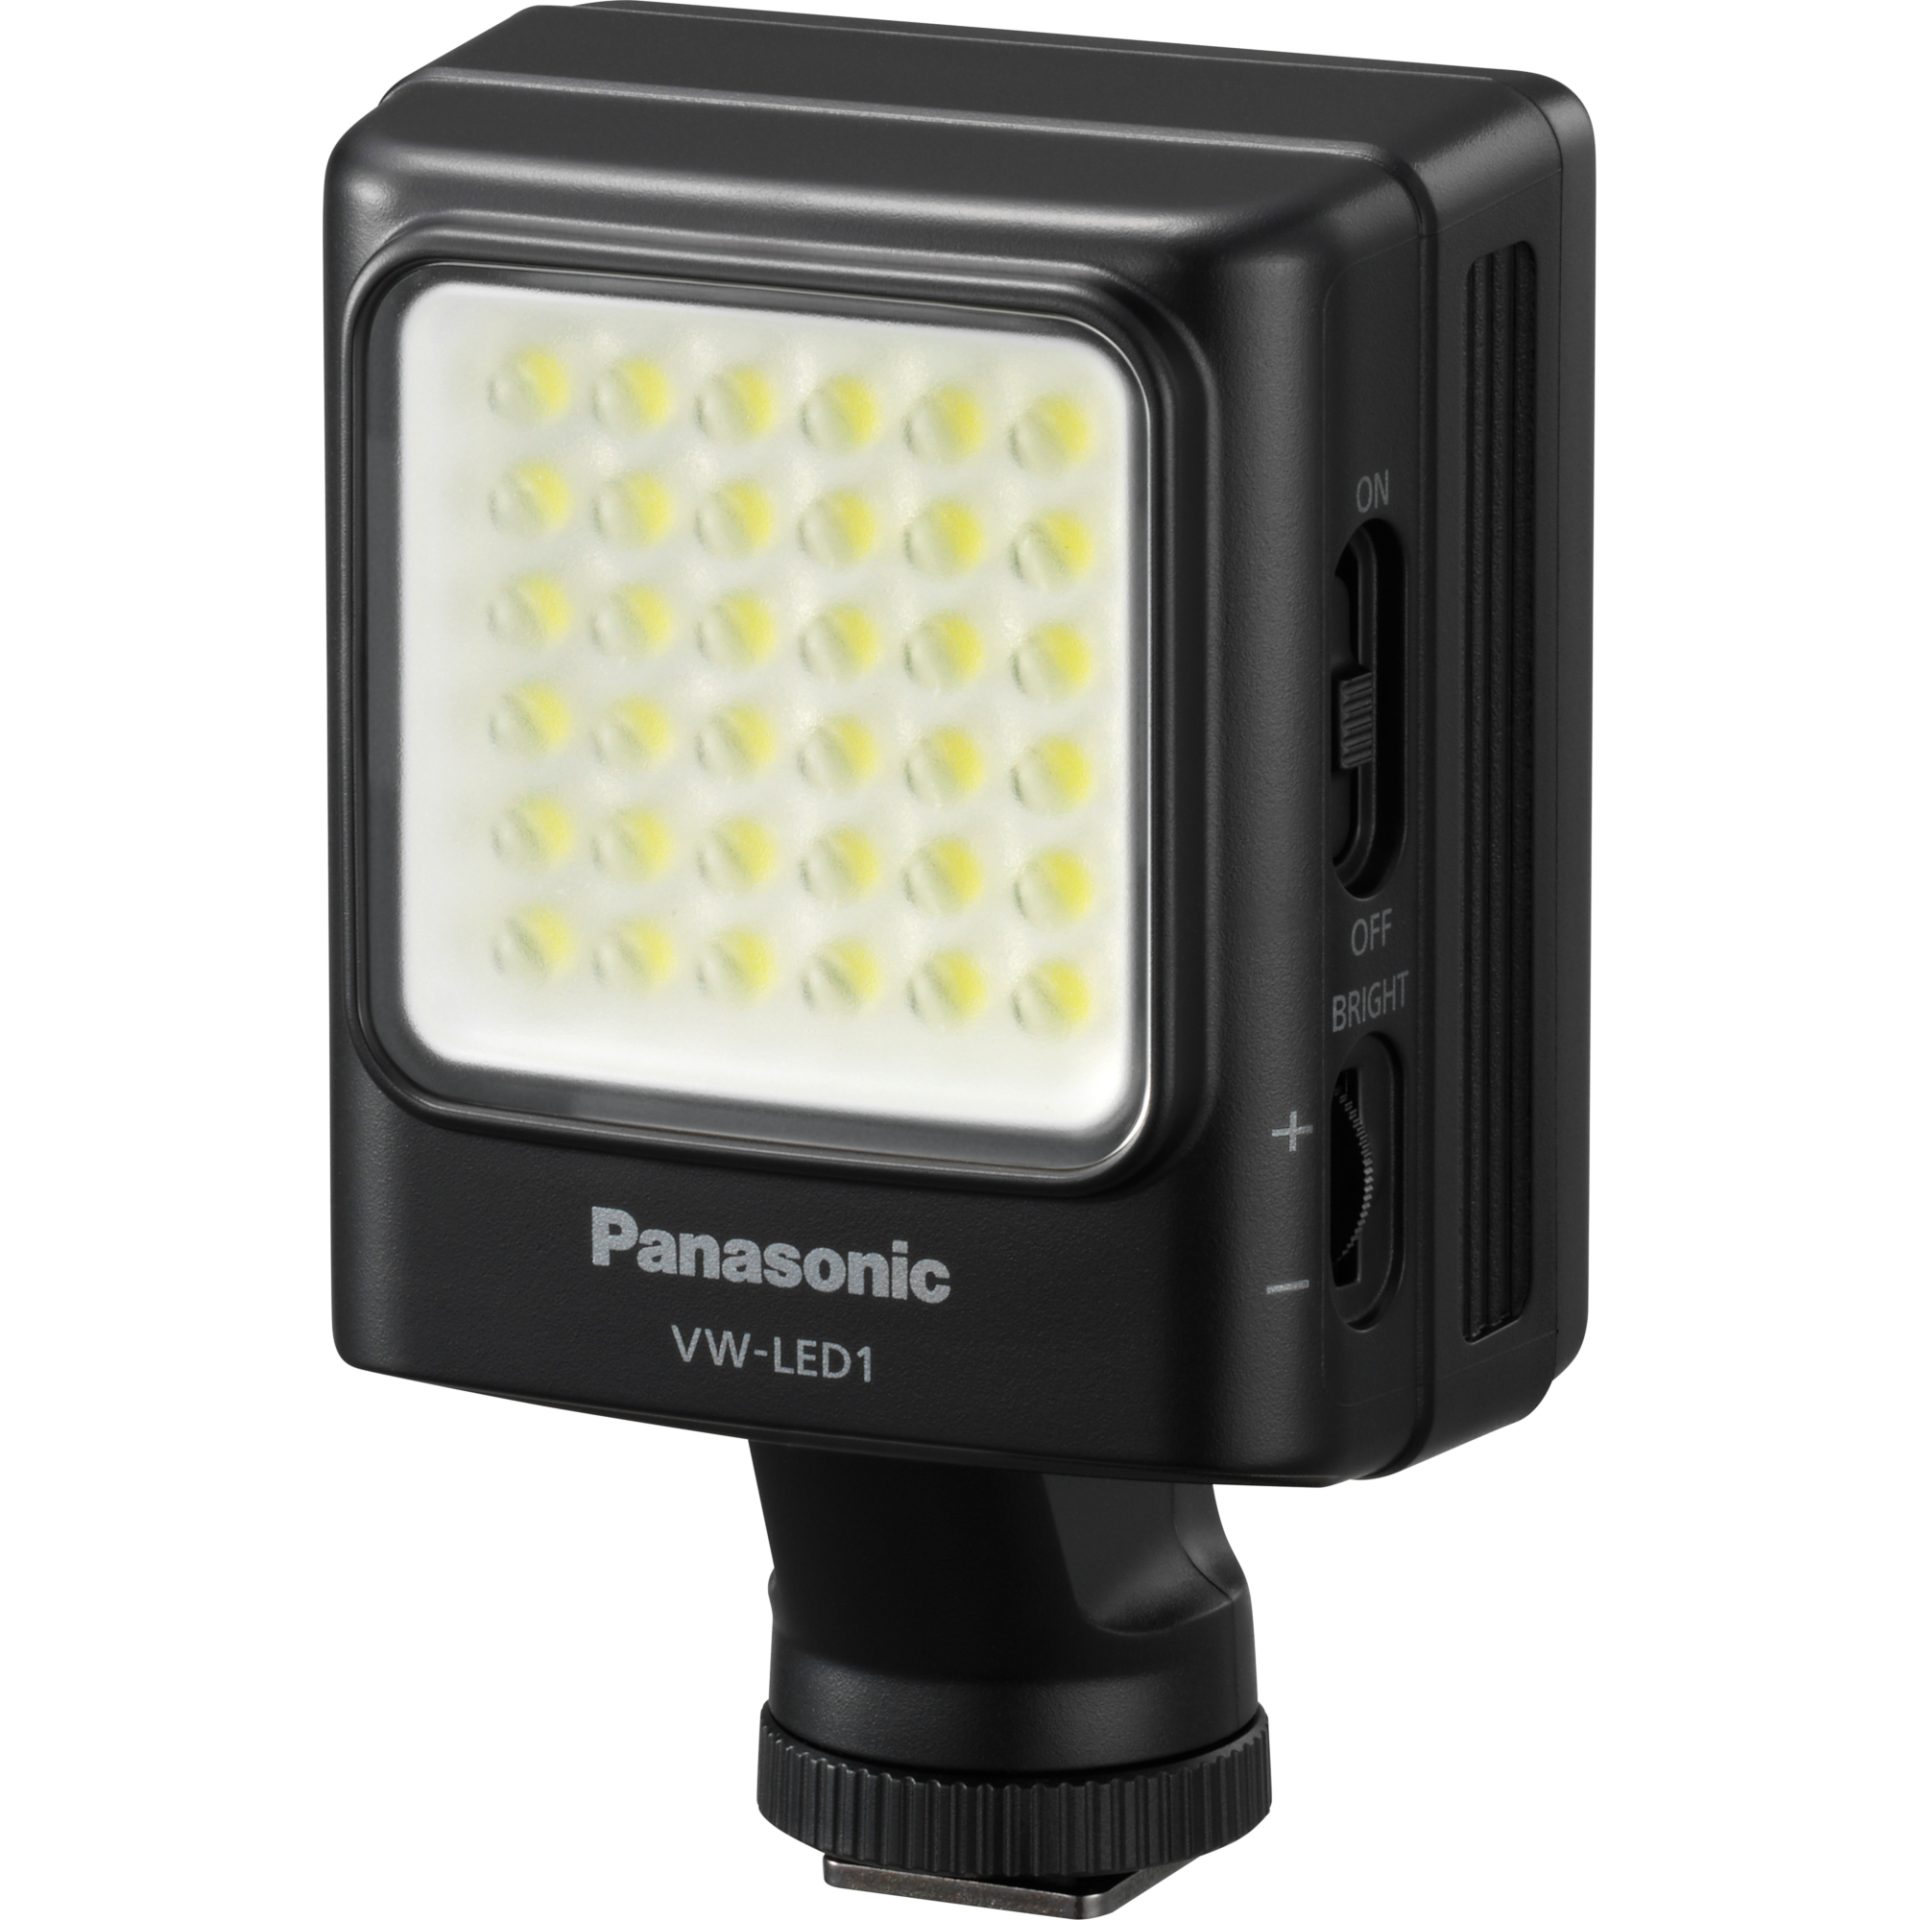 Panasonic VW-LED1 LED osvětlení (teplota barev 5600K, počet LED diod 36, pracovní doba 200min, napájení 4xAA - baterie nebo akumulátory), černá